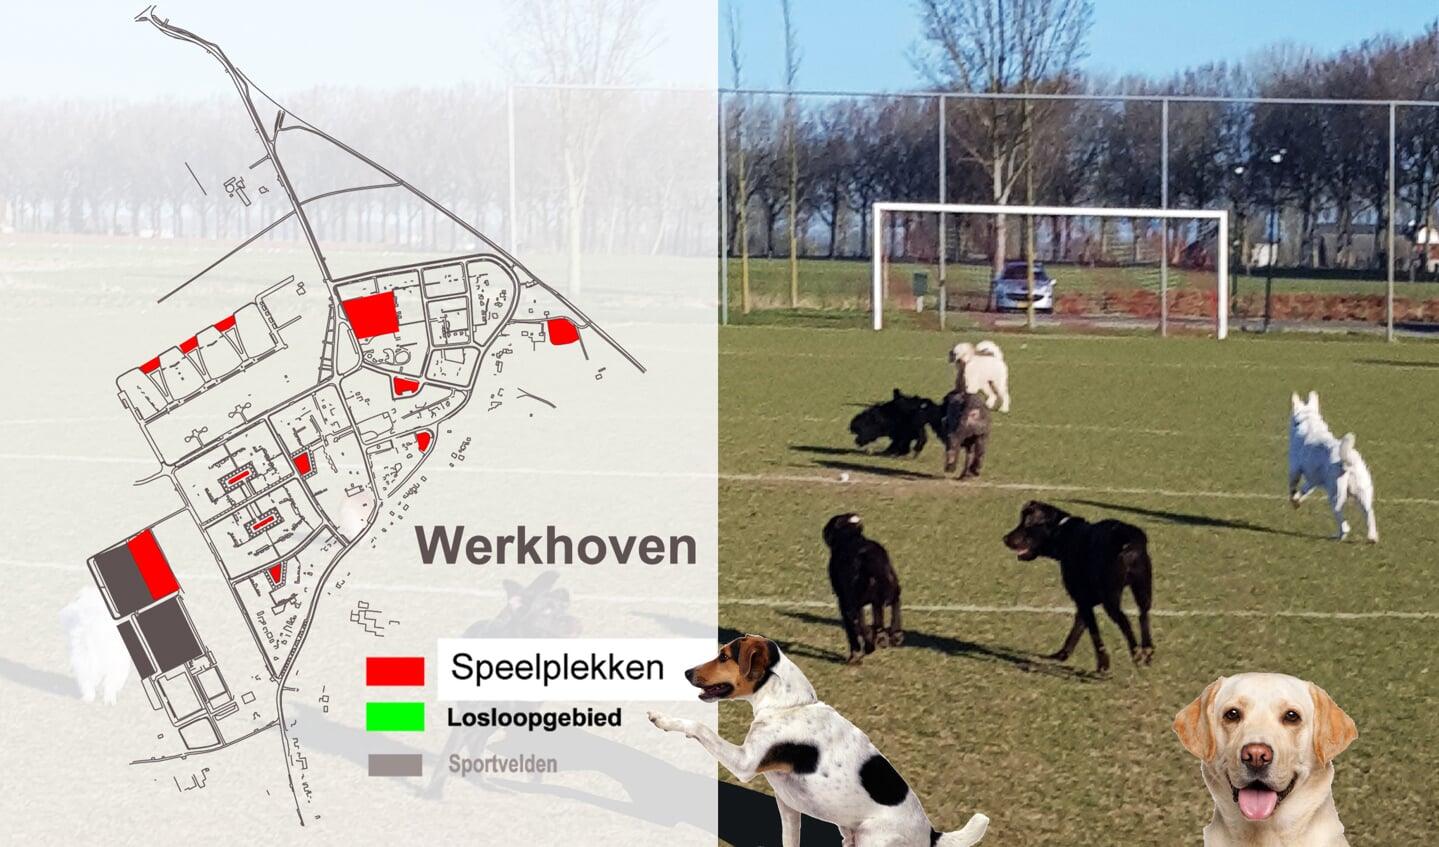 Honden op het voetbalveld bij gebrek aan losloopgebieden (bron: gemeente Bunnik).